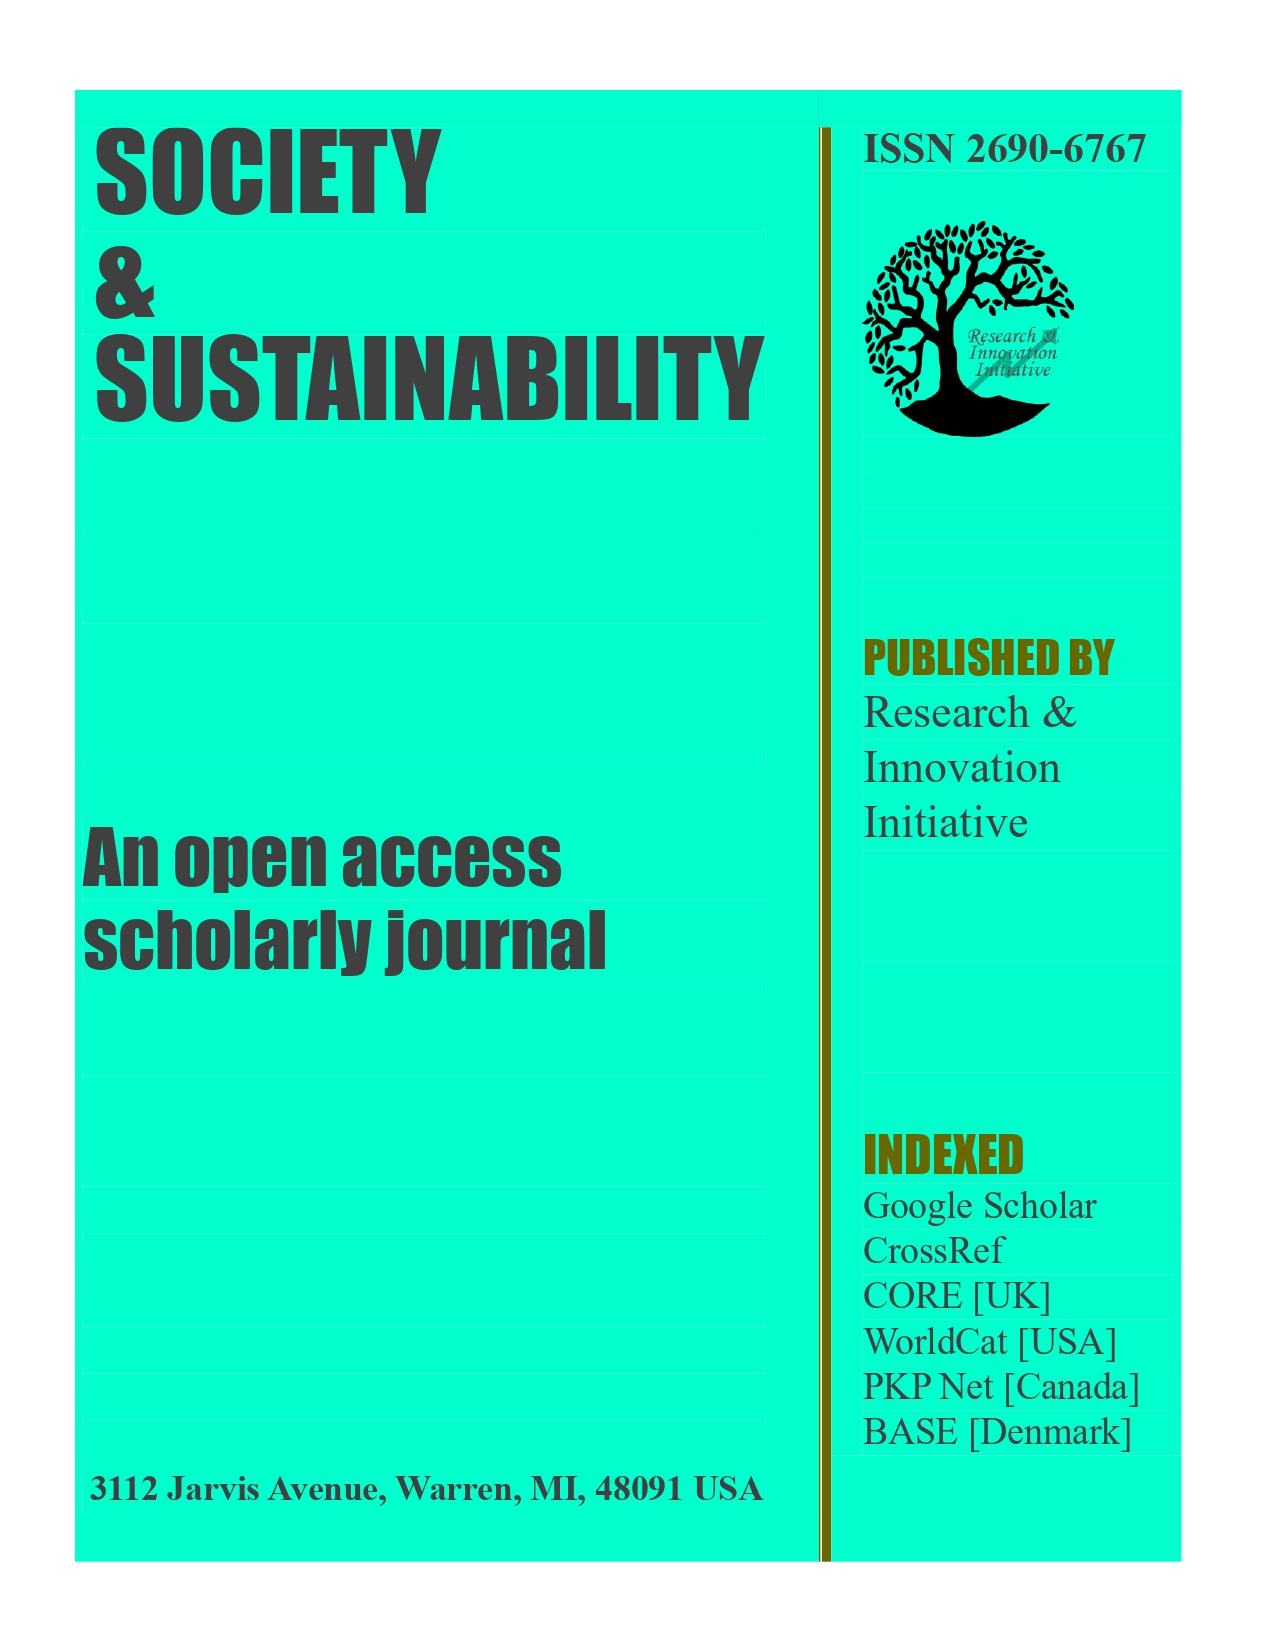 Society & Sustainability